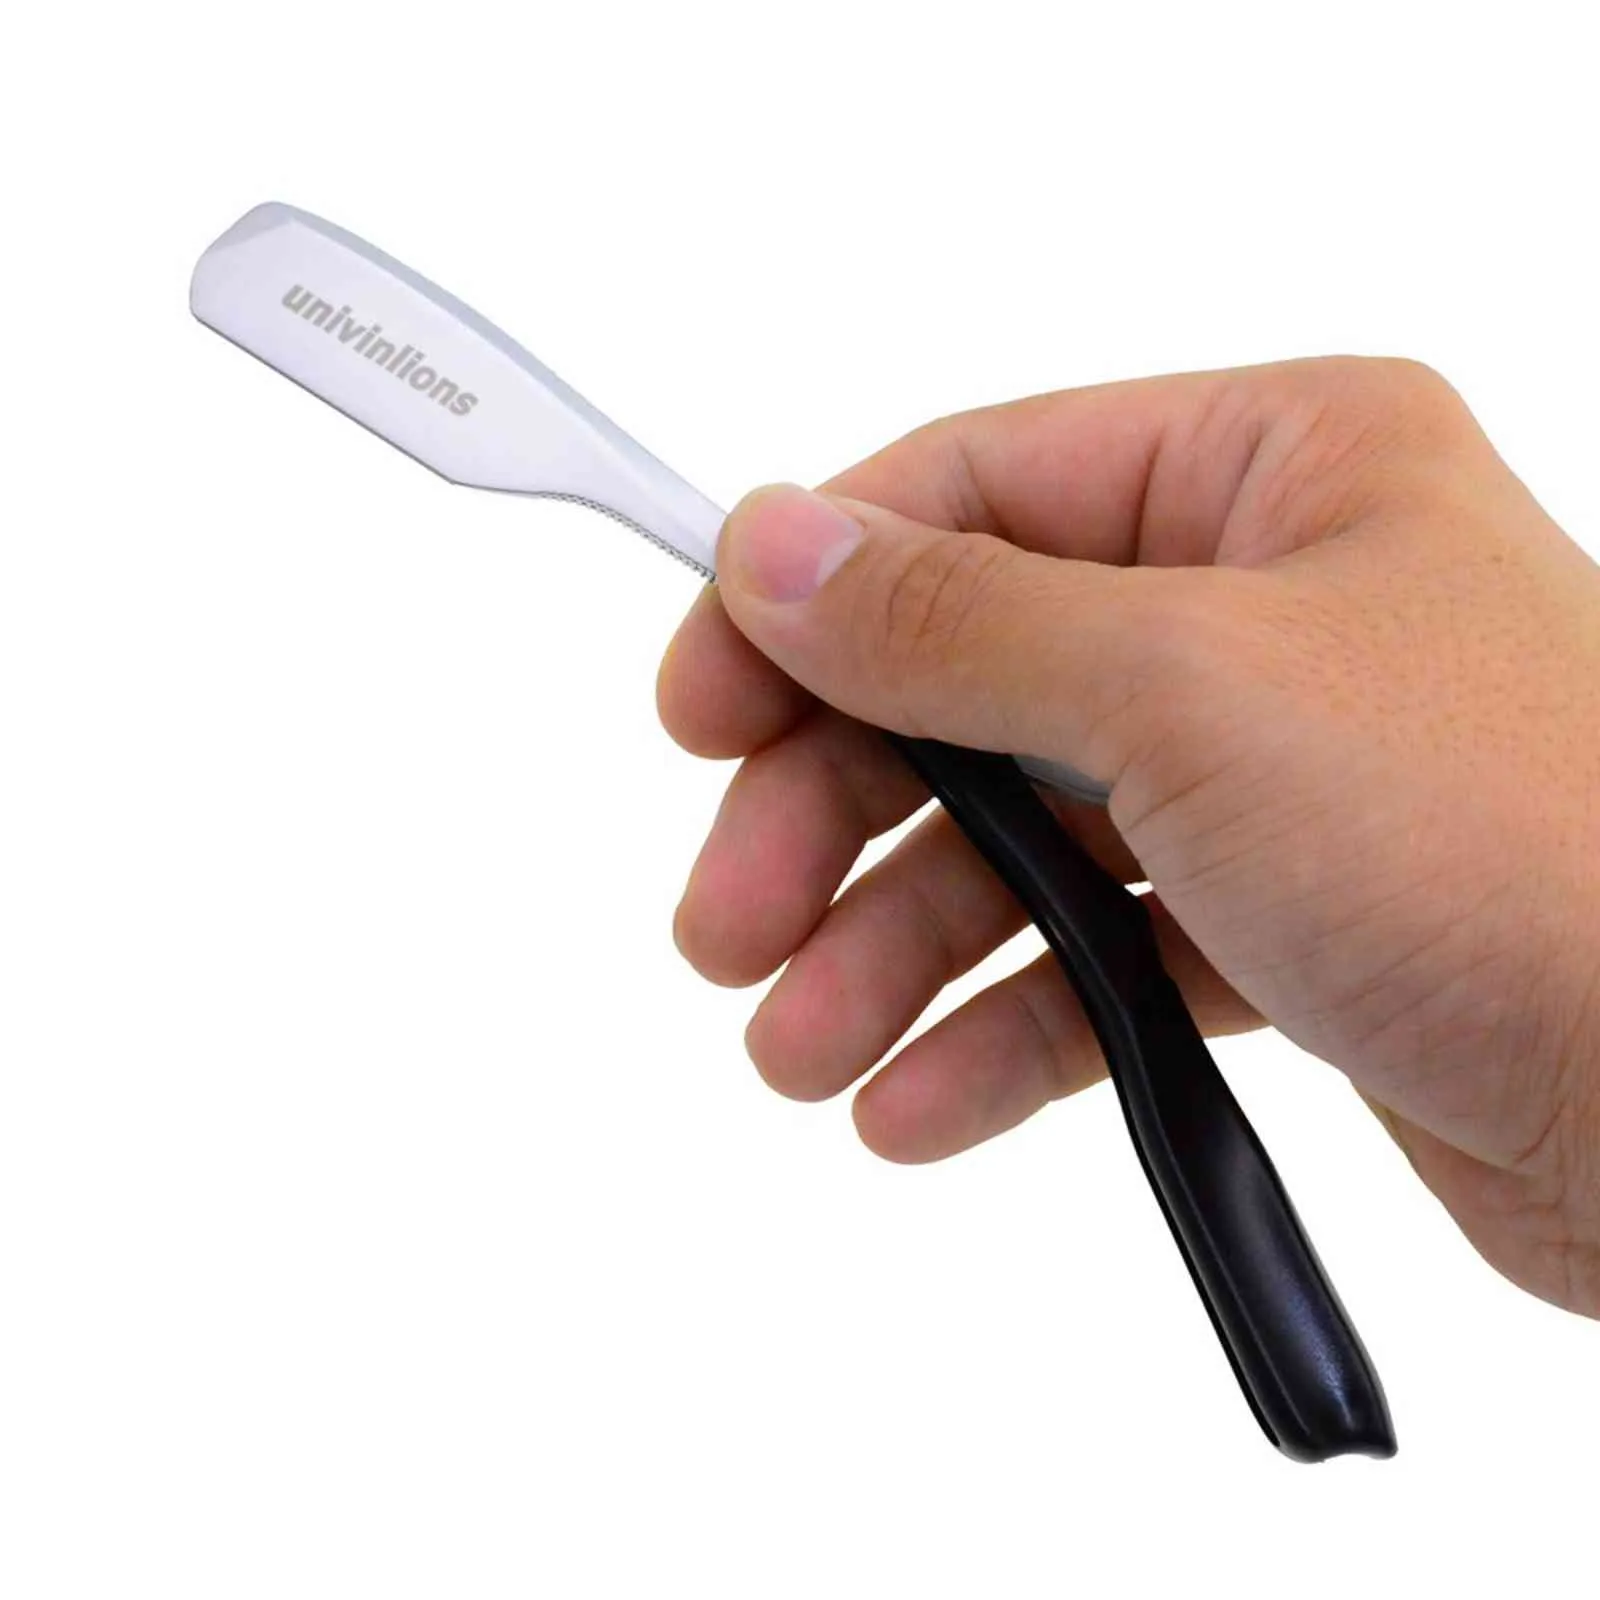 Dural Edge rasoirs 74 lames mécanisme à ressort épilation pliable Salon de rasage rasoir couteau barbe visage aisselles corps sourcil